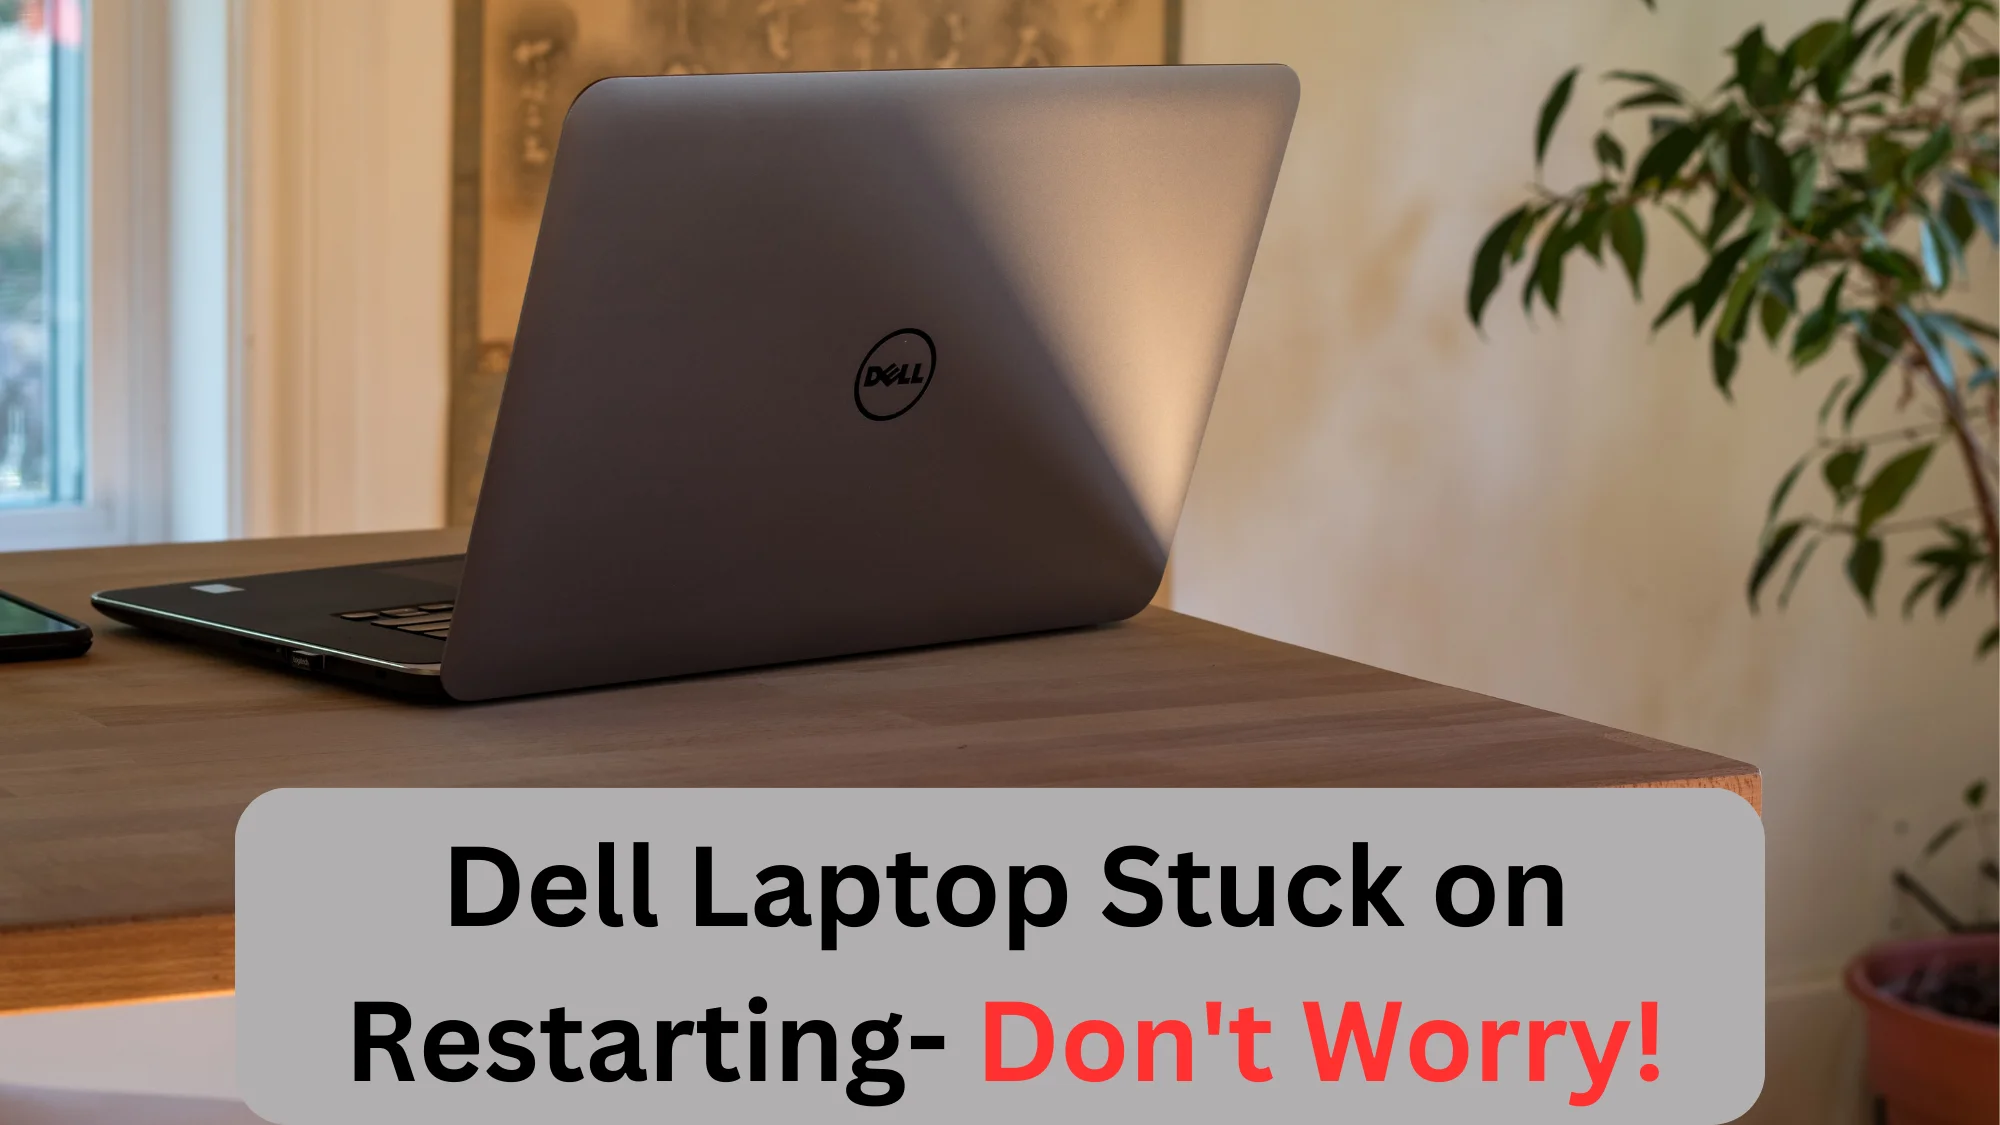 Dell Laptop Stuck on Restarting